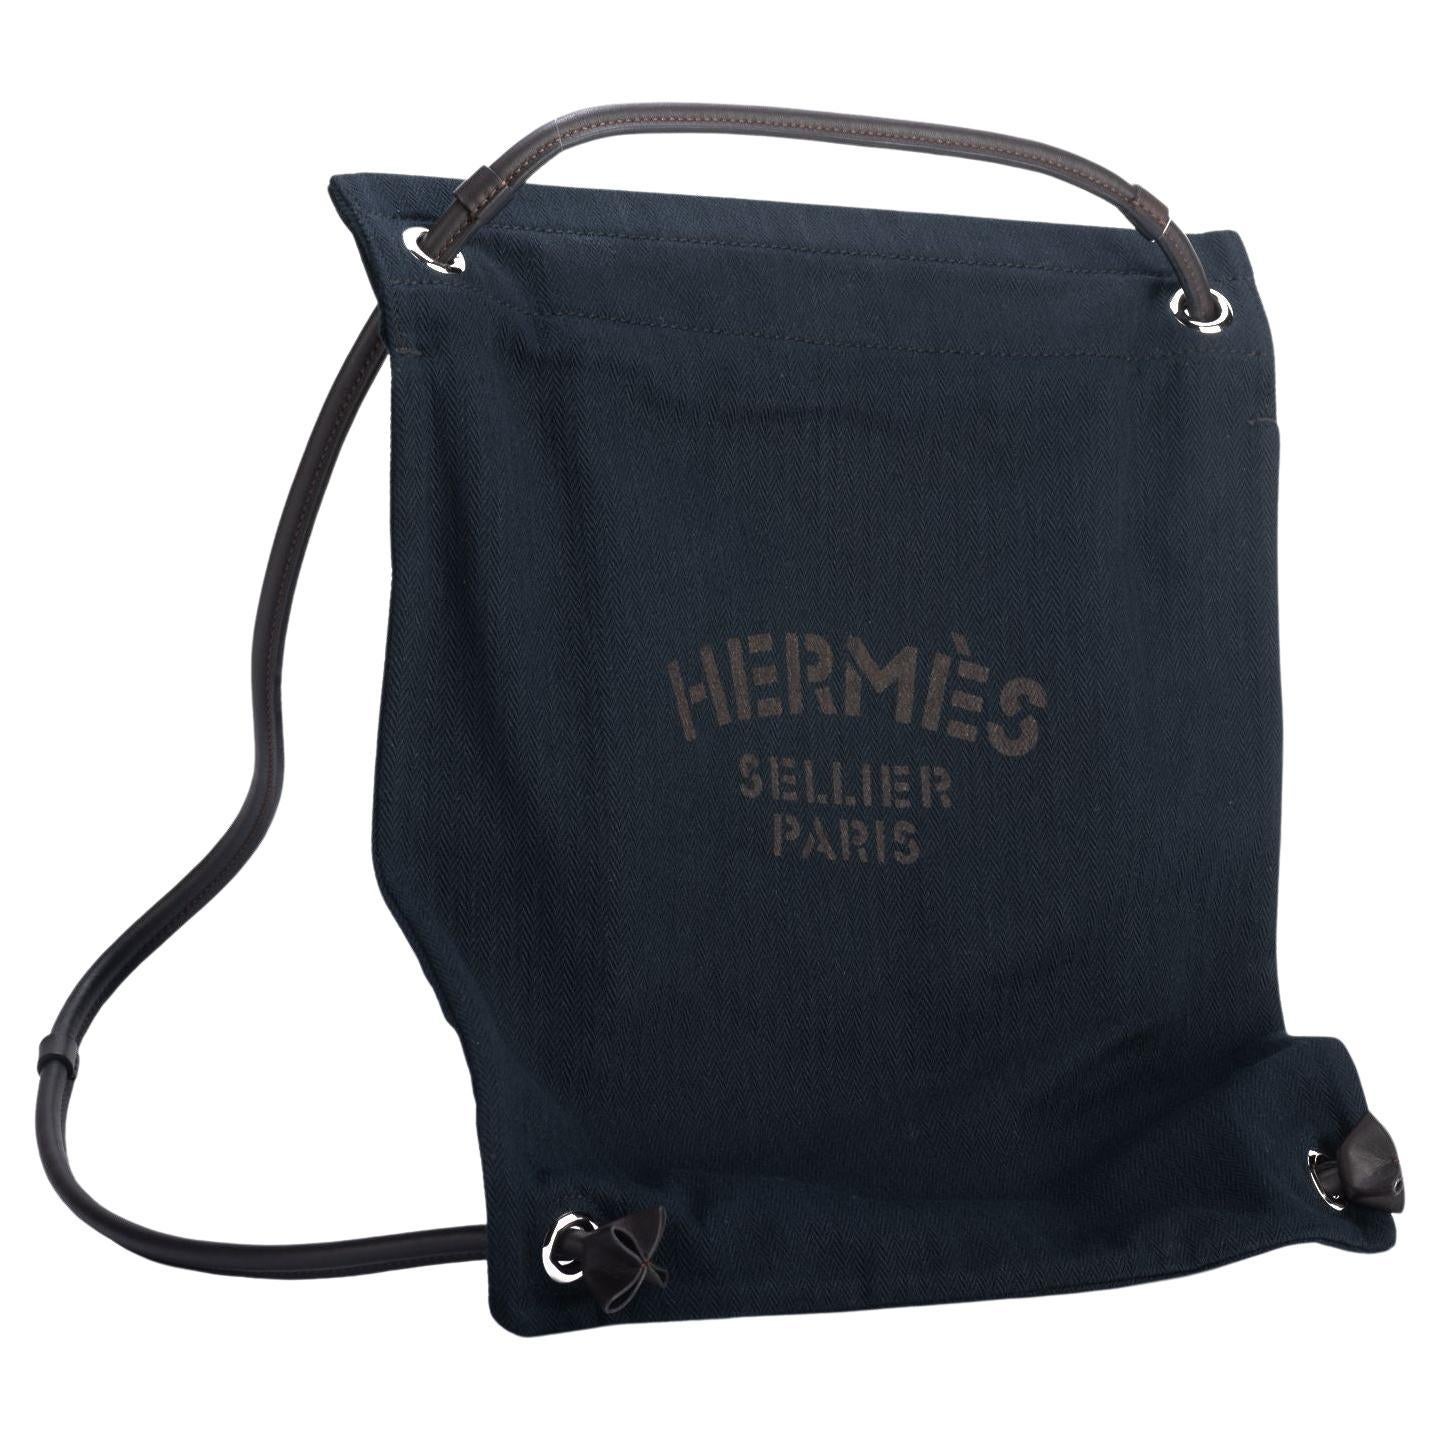 Hermès - Sac à main en toile à chevrons noir avec sangles en cuir noir. Peut être porté comme un sac à bandoulière ou comme un sac à dos. Drop de l'épaule 17 cm. La housse d'origine est transparente.
